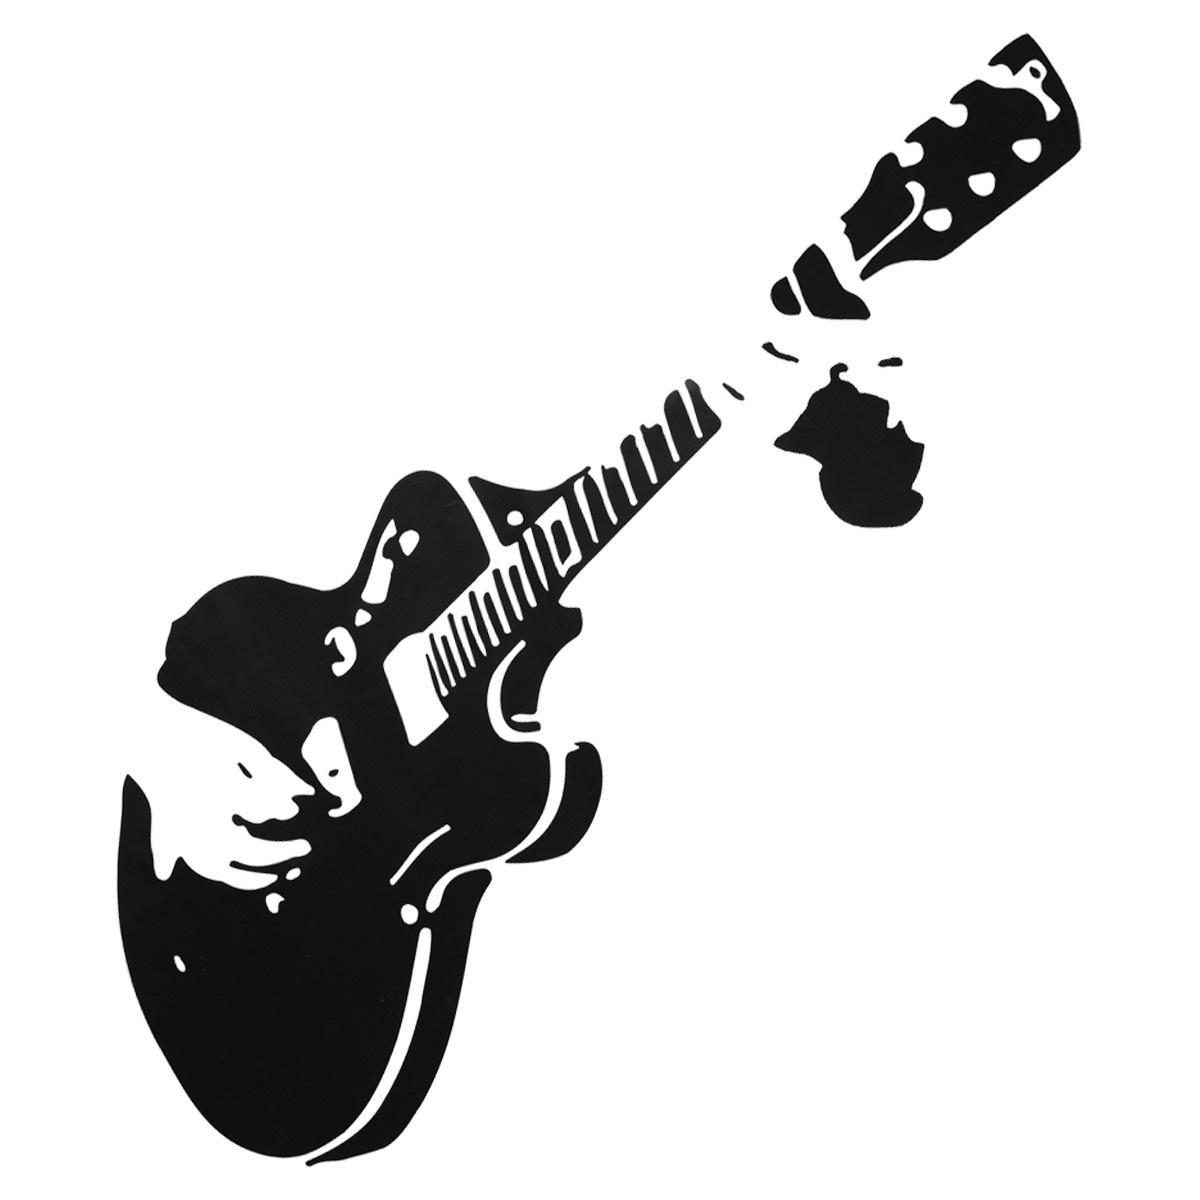 

Съемный Гитара Гитарист Музыка DIY Рок Стиль Наклейка Home Decor Art Стикер Стены Обои